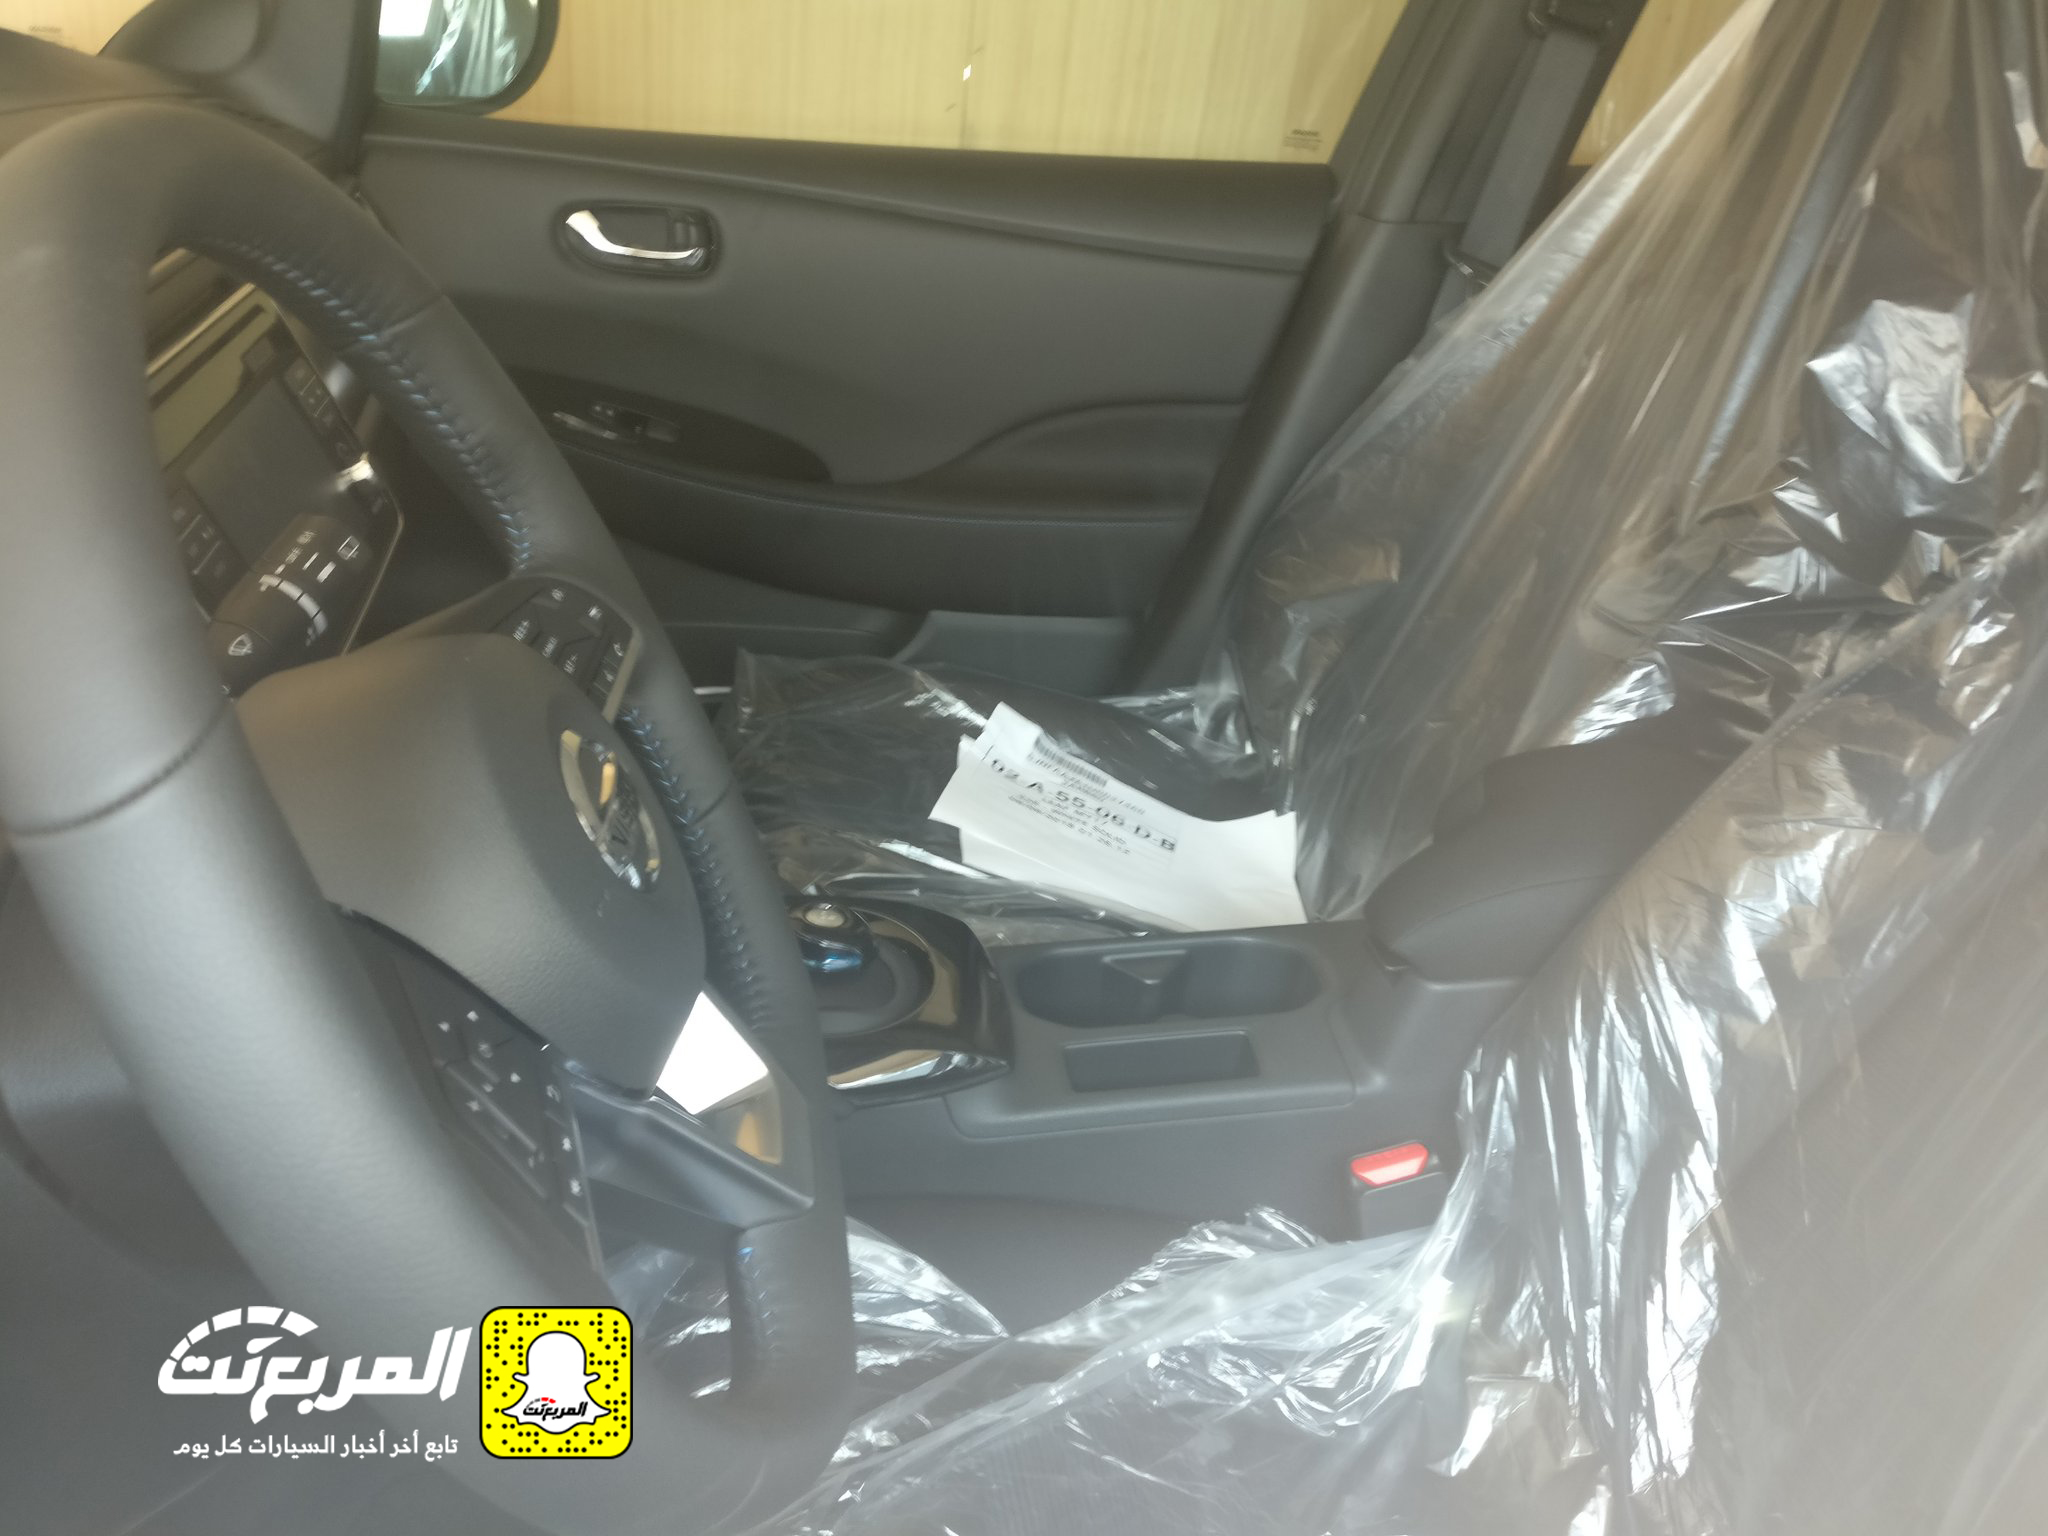 "بالصور" وصول سيارات نيسان ليف الكهربائية الى السعودية لإجراء اختبارات عليها 4